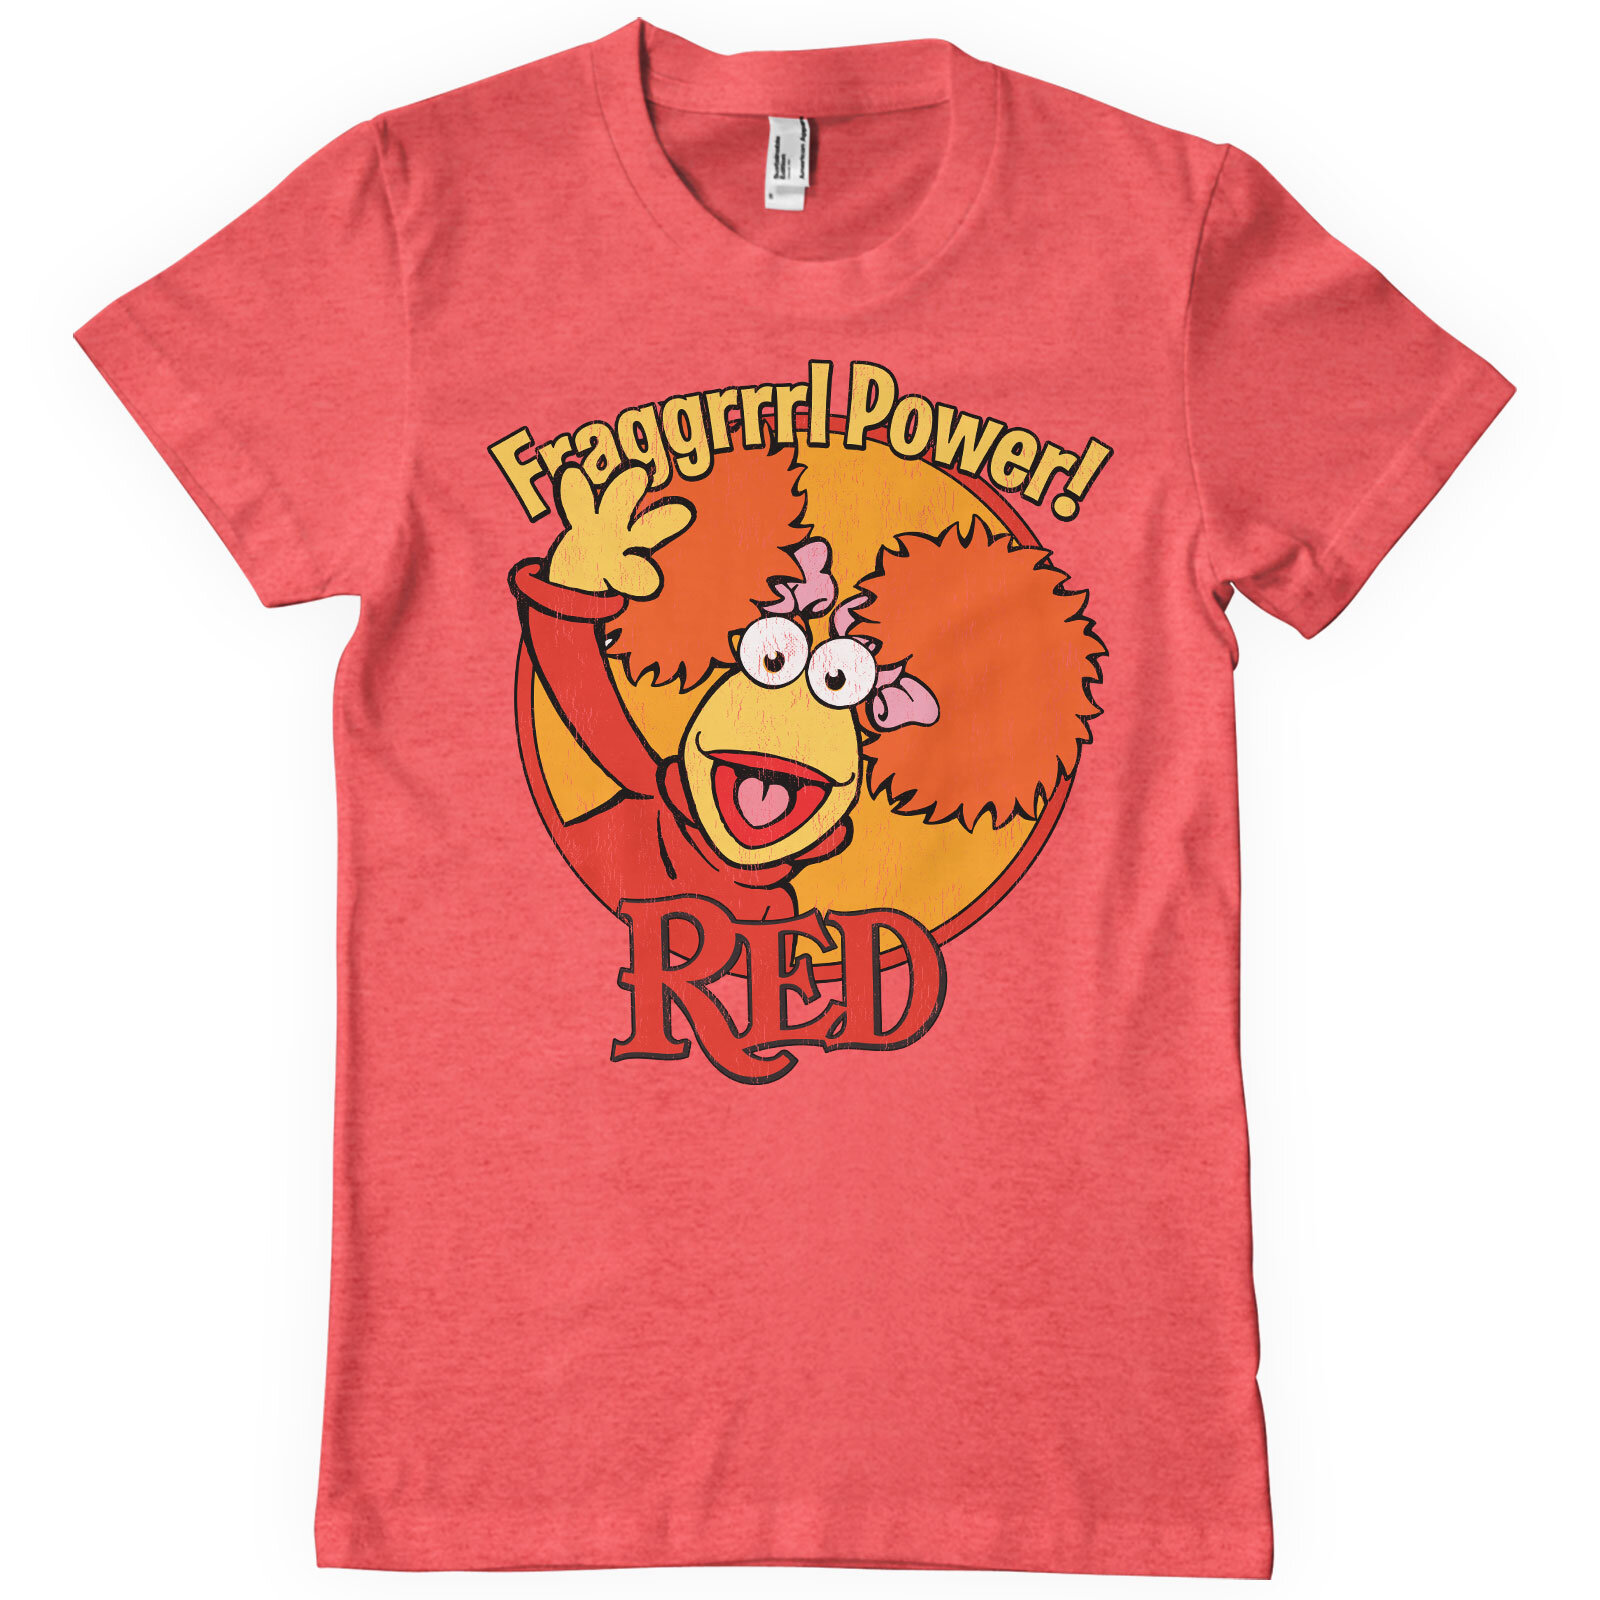 Red - Fragggrrrl Power T-Shirt